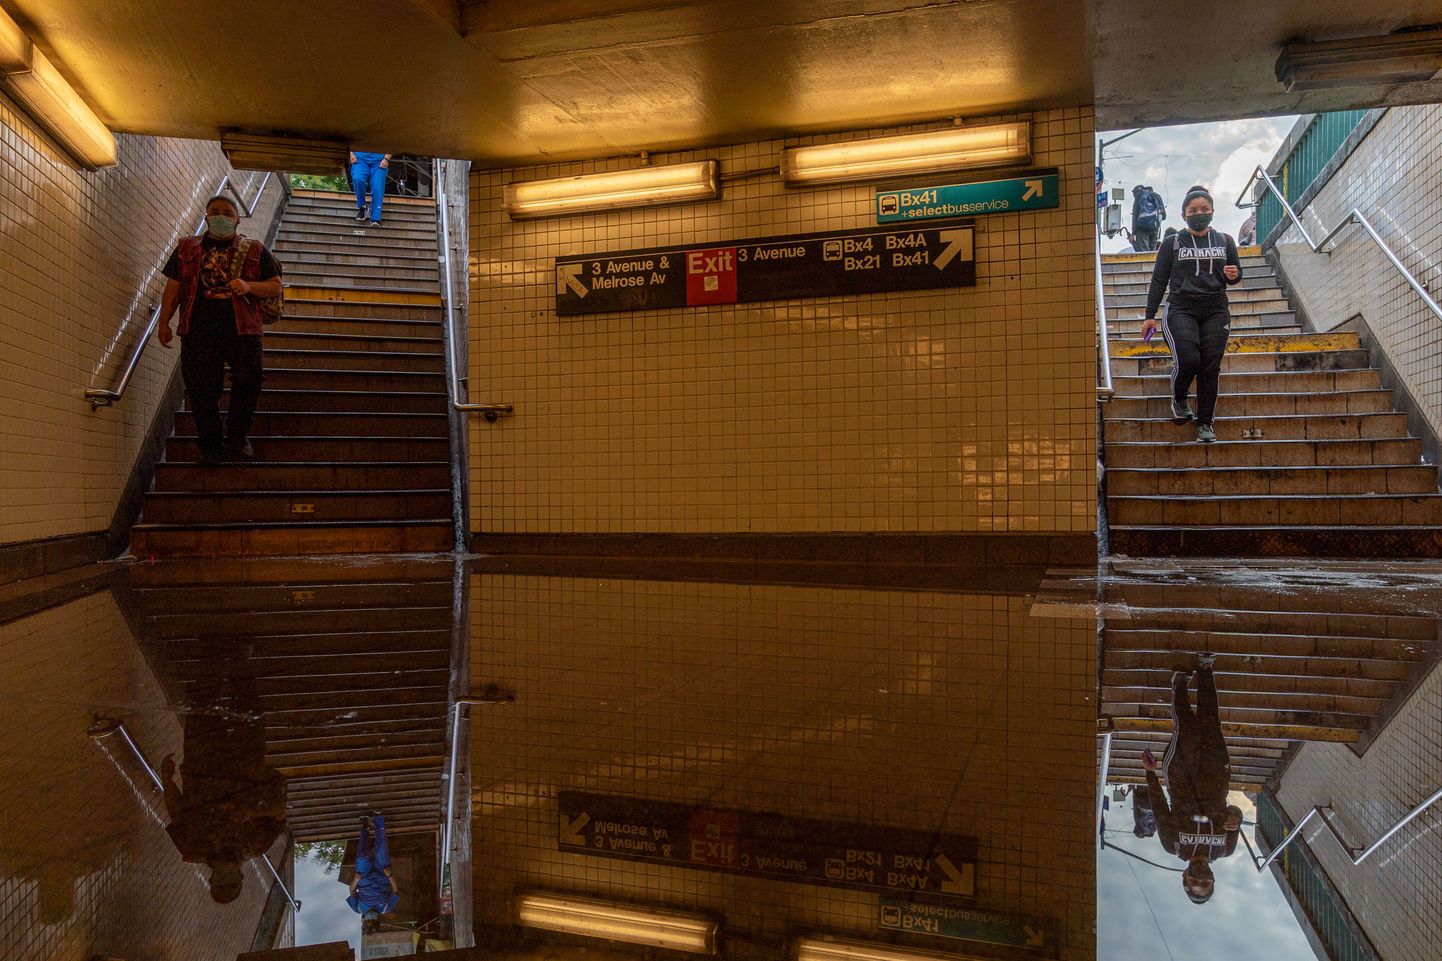 Üleujutatud 3. avenüü/149. metroojaam. Piirkonnas on troopilise tormi tagajärjel hukkunud 41 inimest.